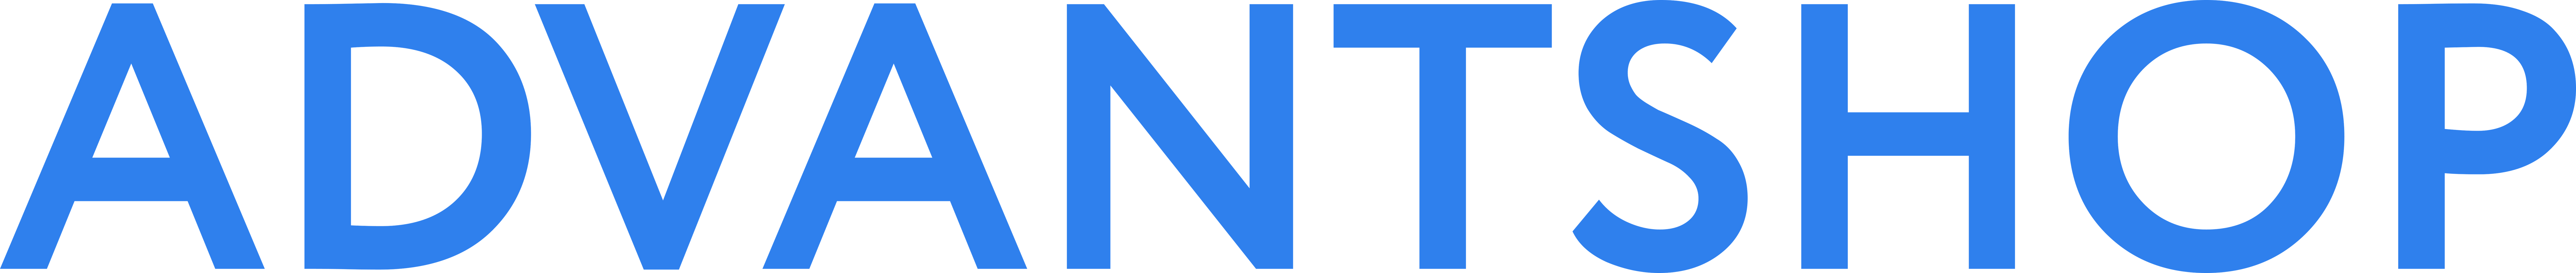 Логотип AdvantShop для прессы синие буквы, png